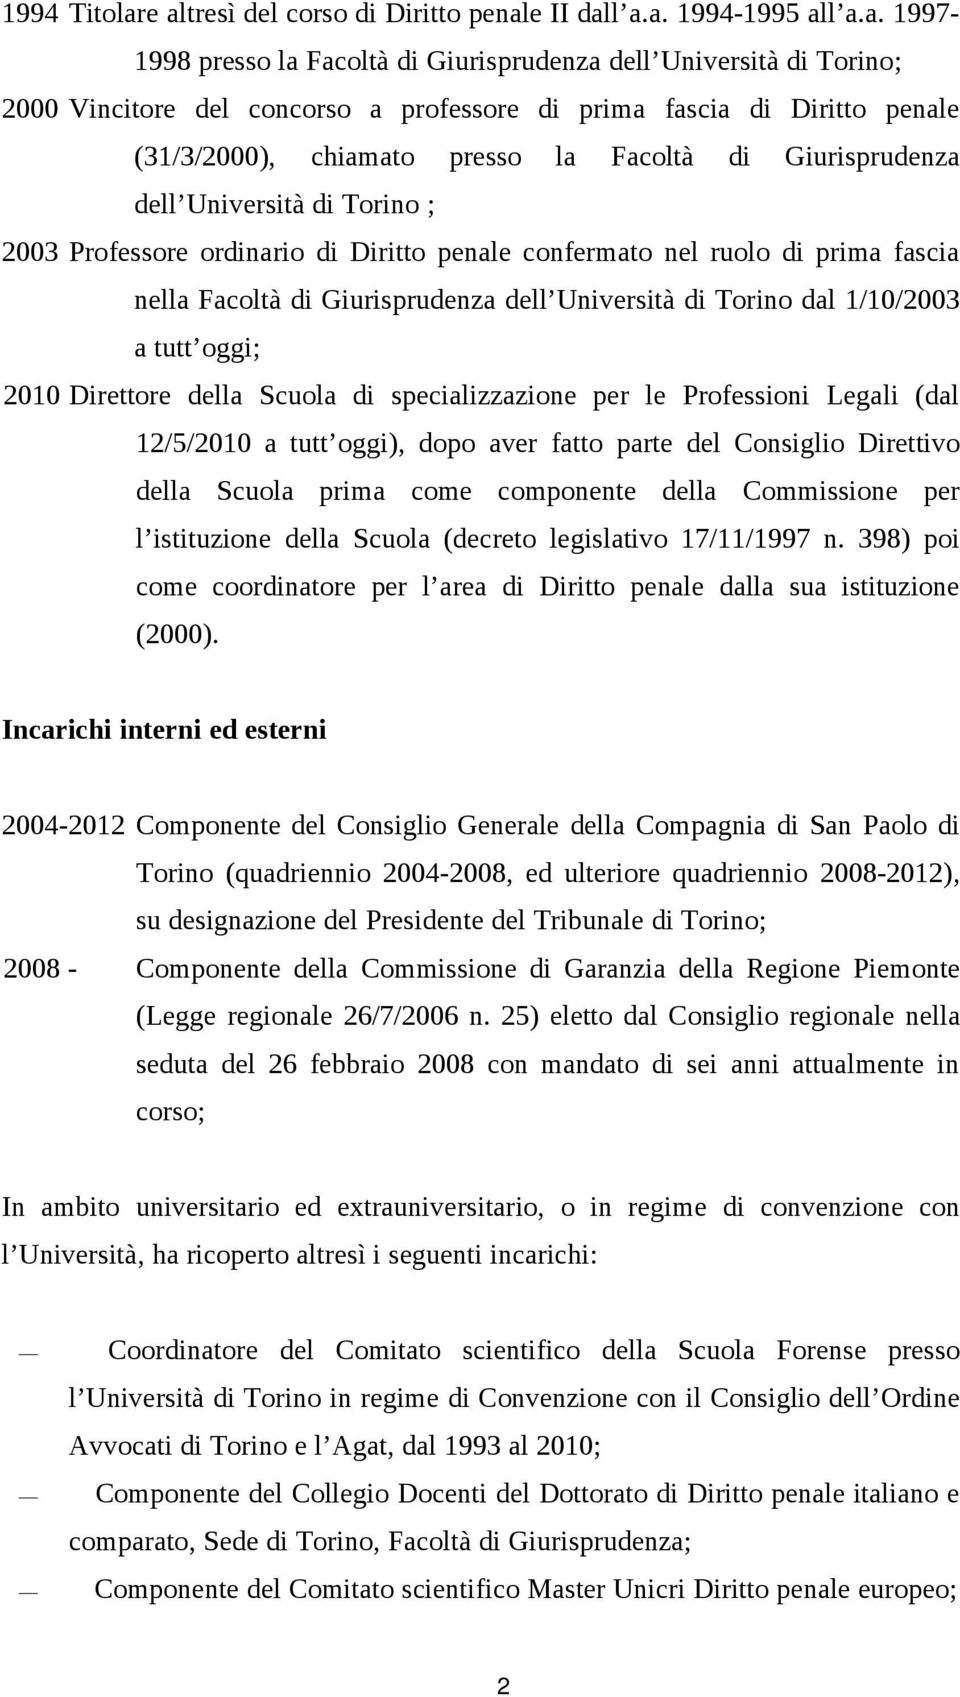 di Diritto penale (31/3/2000), chiamato presso la Facoltà di Giurisprudenza dell Università di Torino ; 2003 Professore ordinario di Diritto penale confermato nel ruolo di prima fascia nella Facoltà